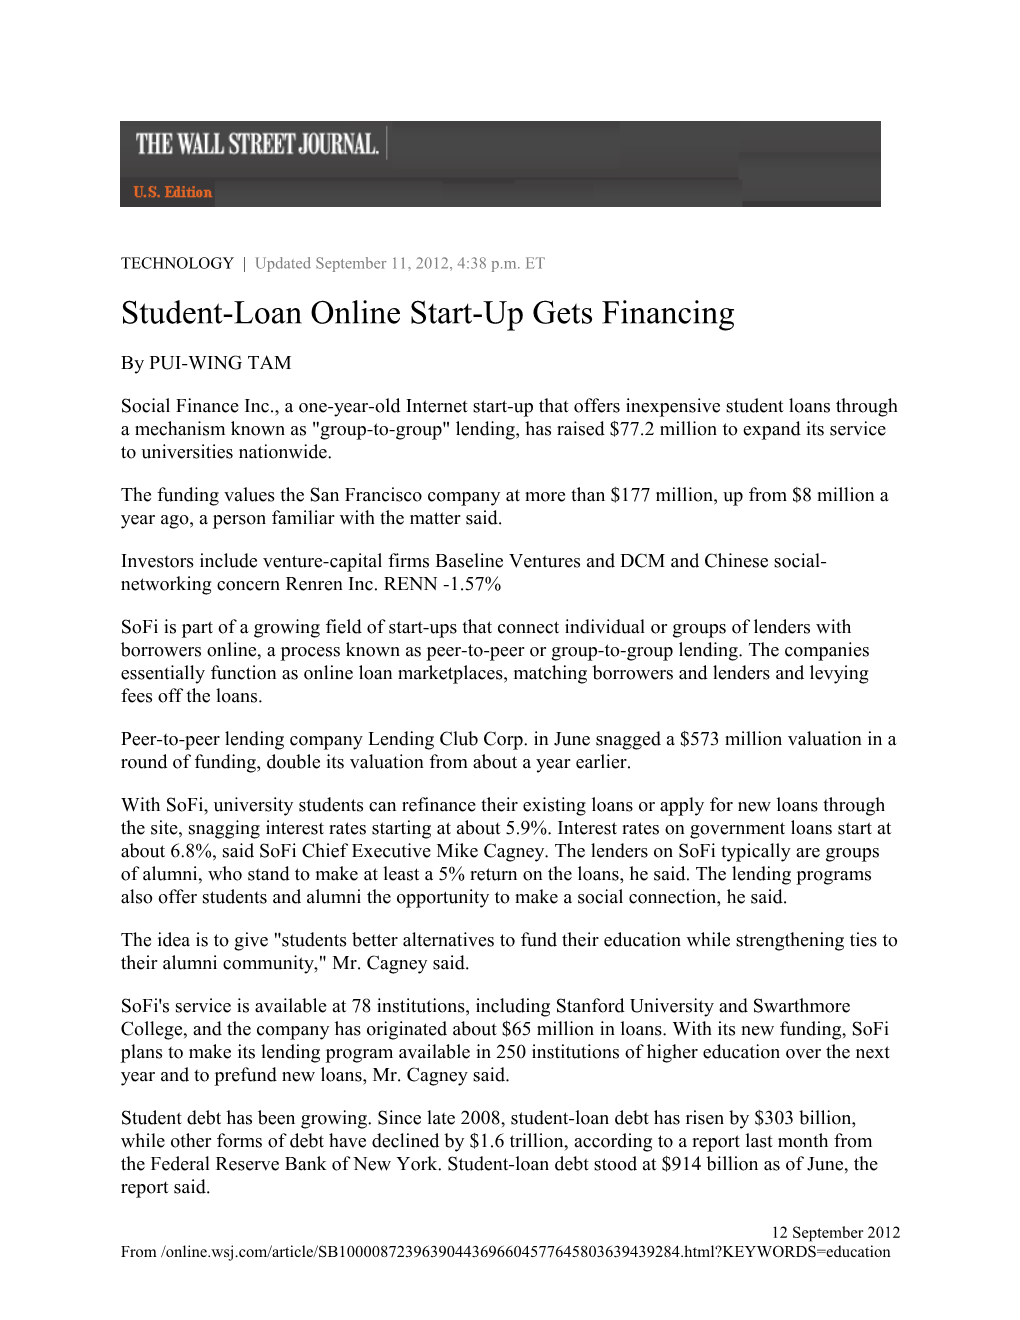 Student-Loan Online Start-Up Gets Financing